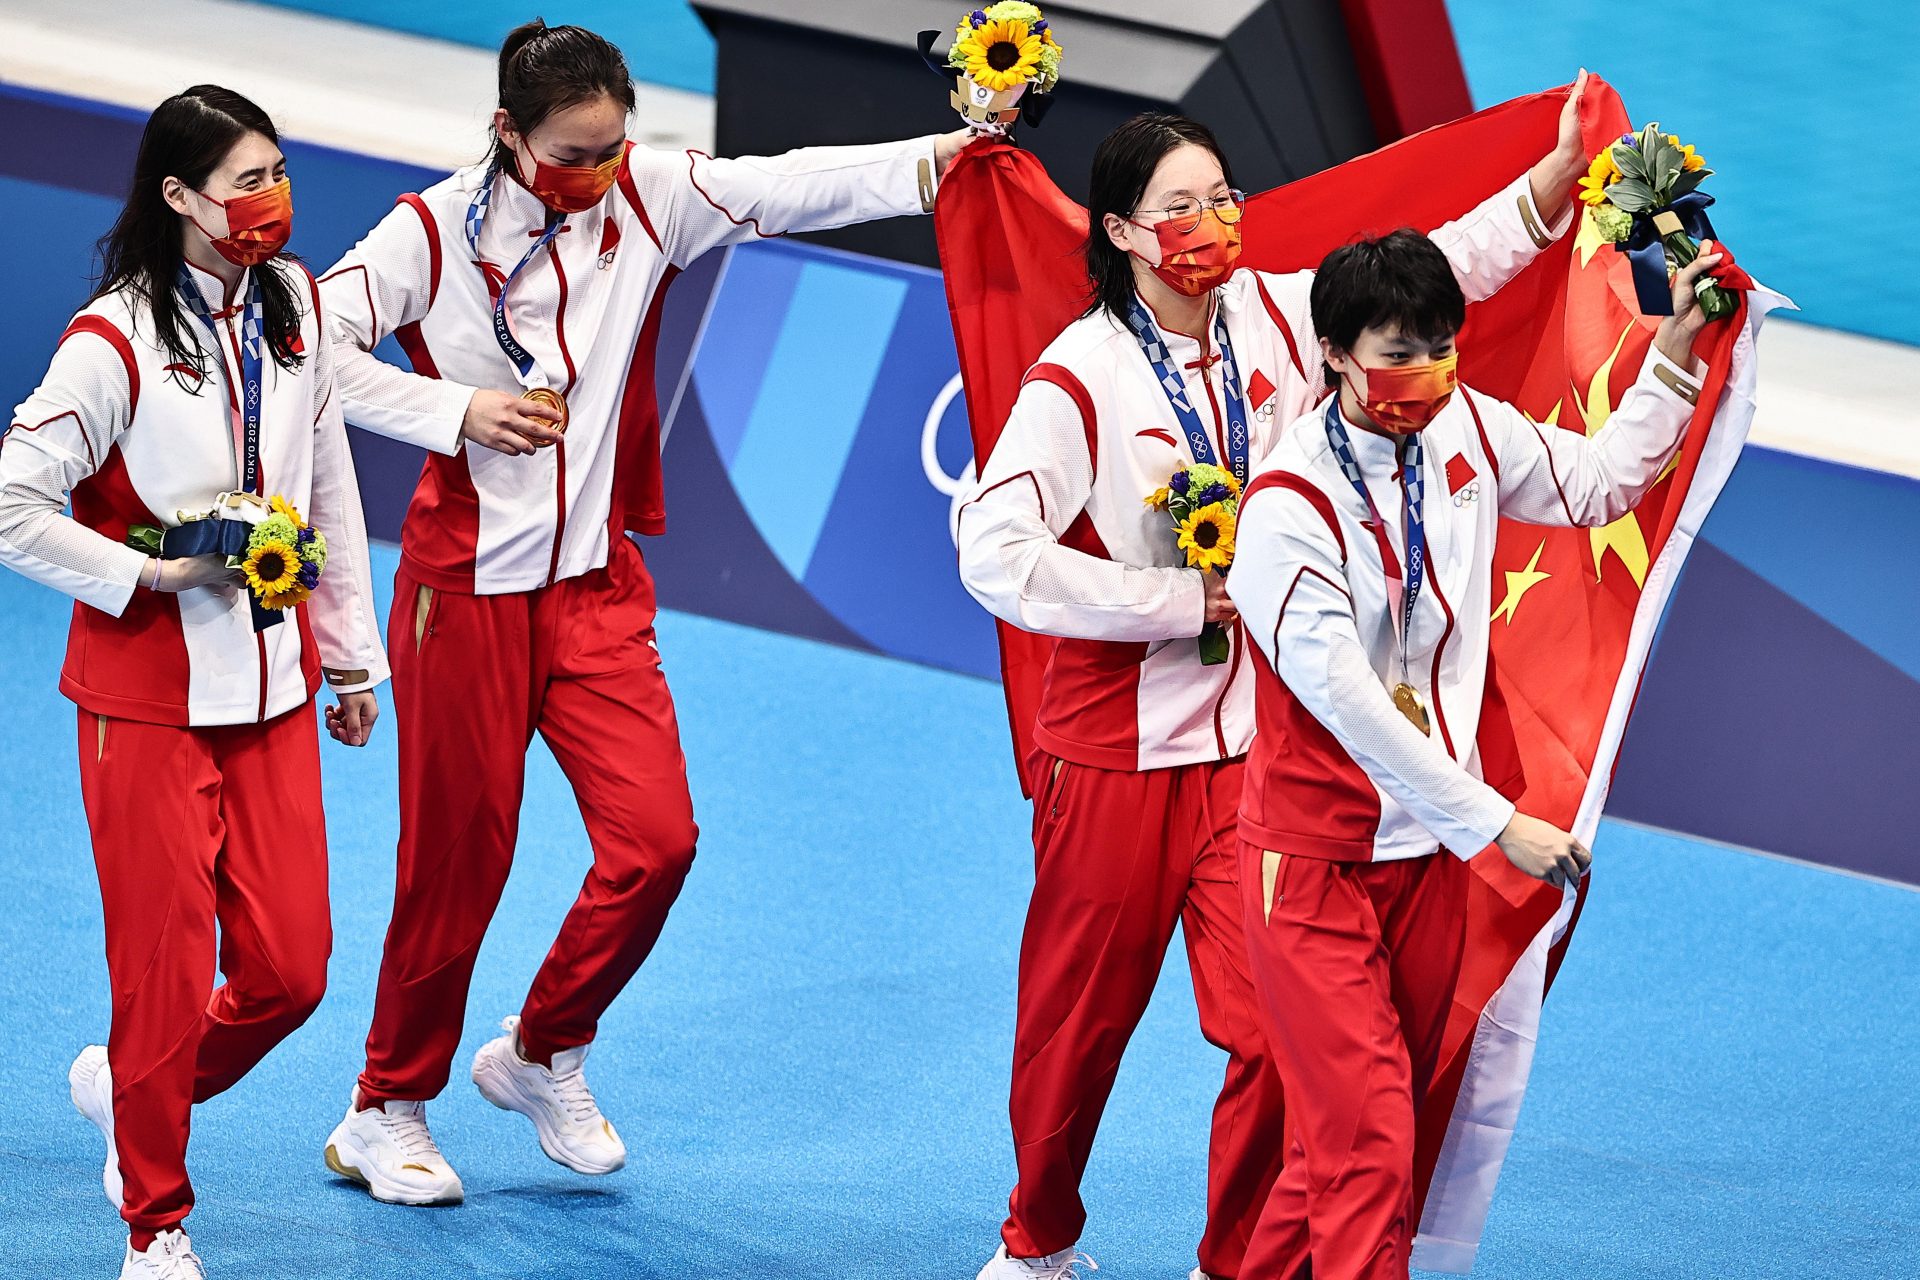 Questões de doping chinês